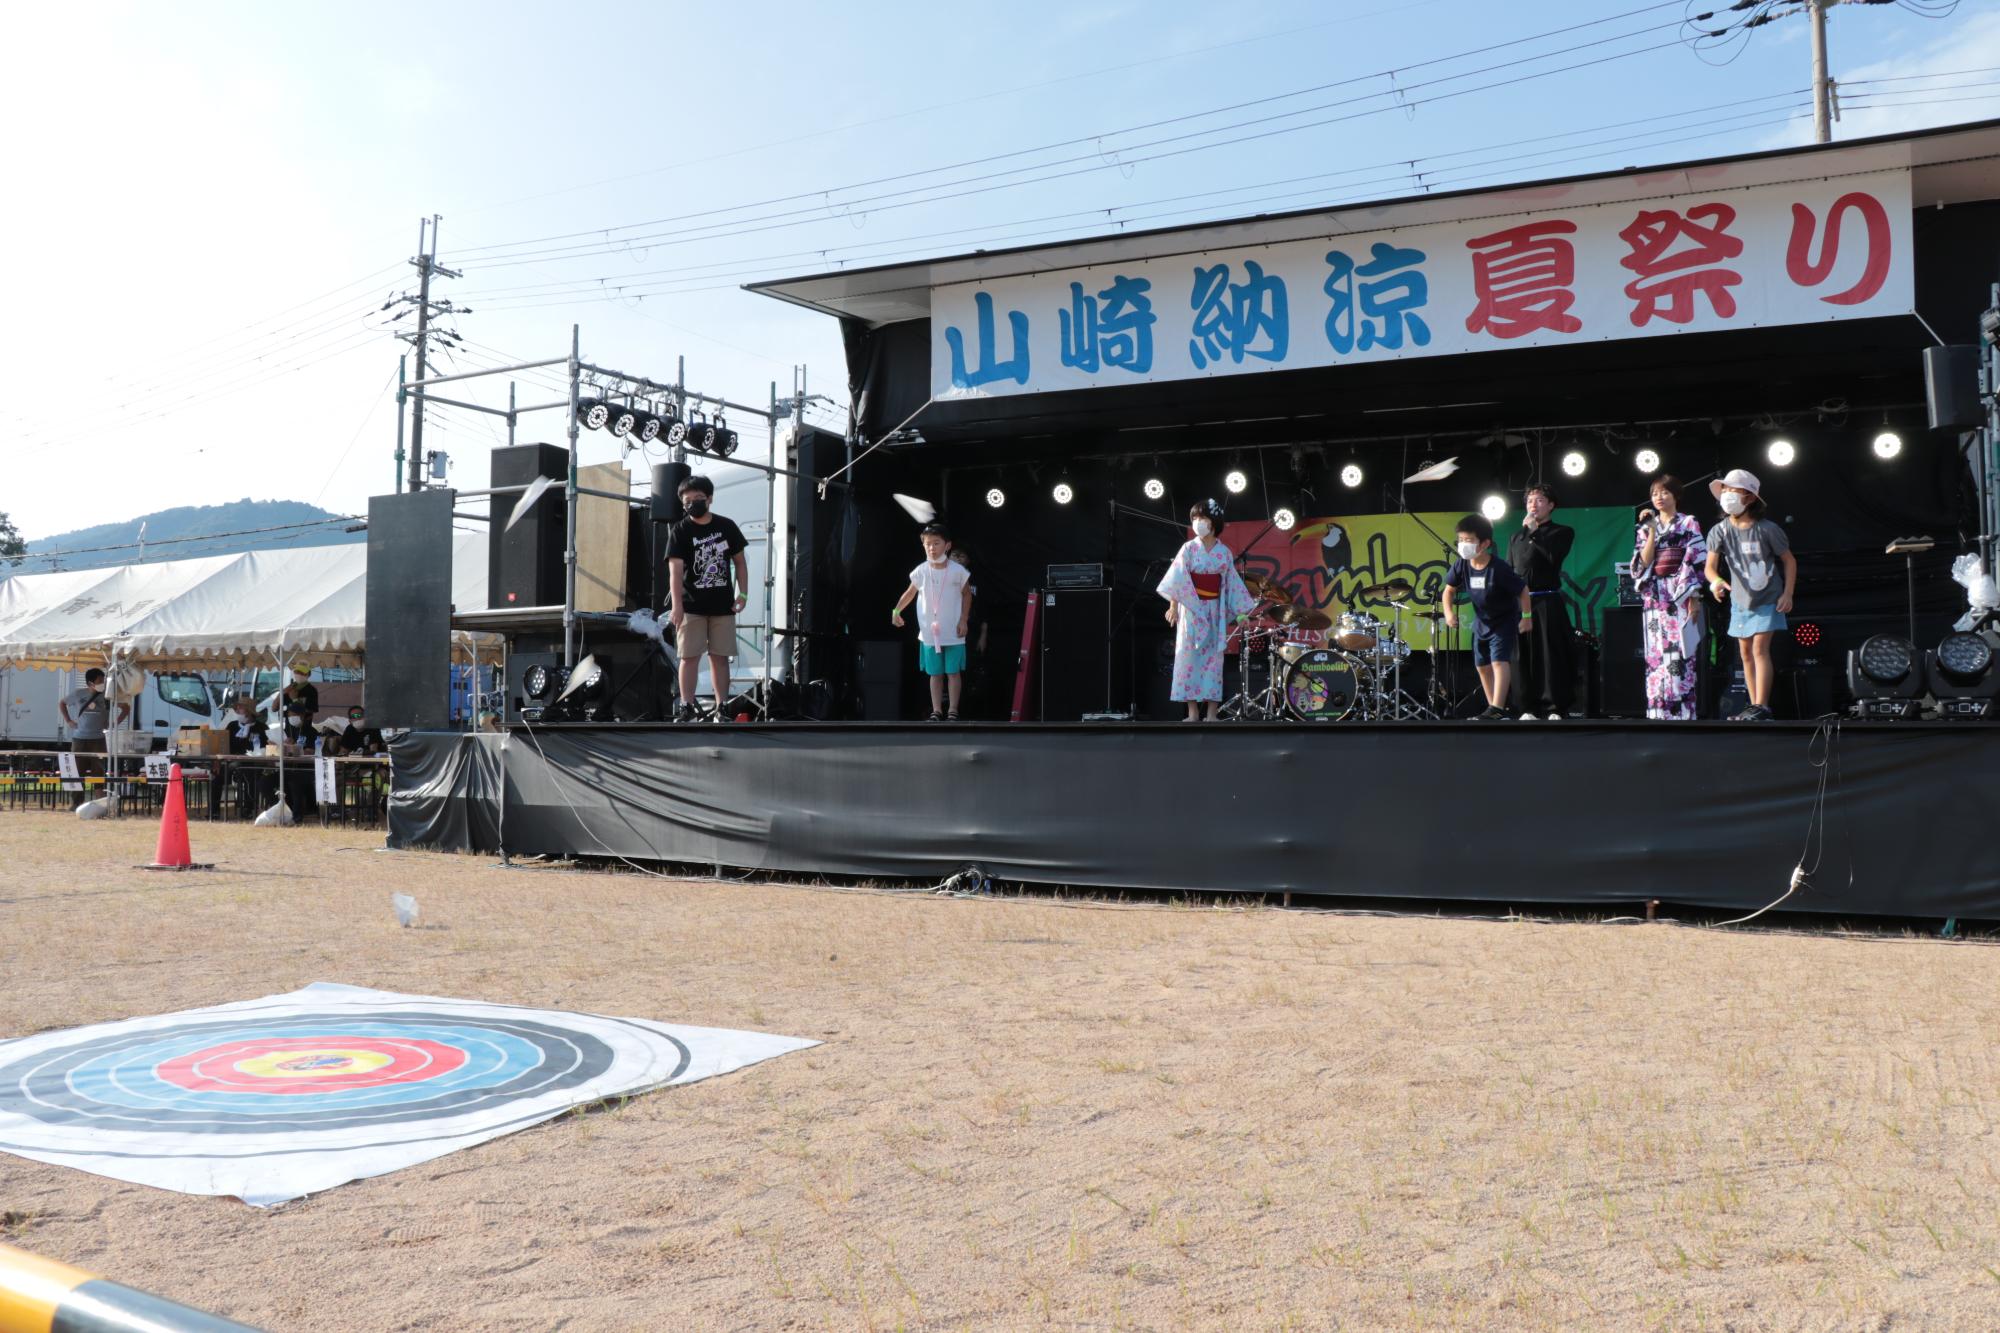 山崎納涼夏祭りで紙飛行機を飛ばして的を狙う競技を楽しむ参加者らの写真